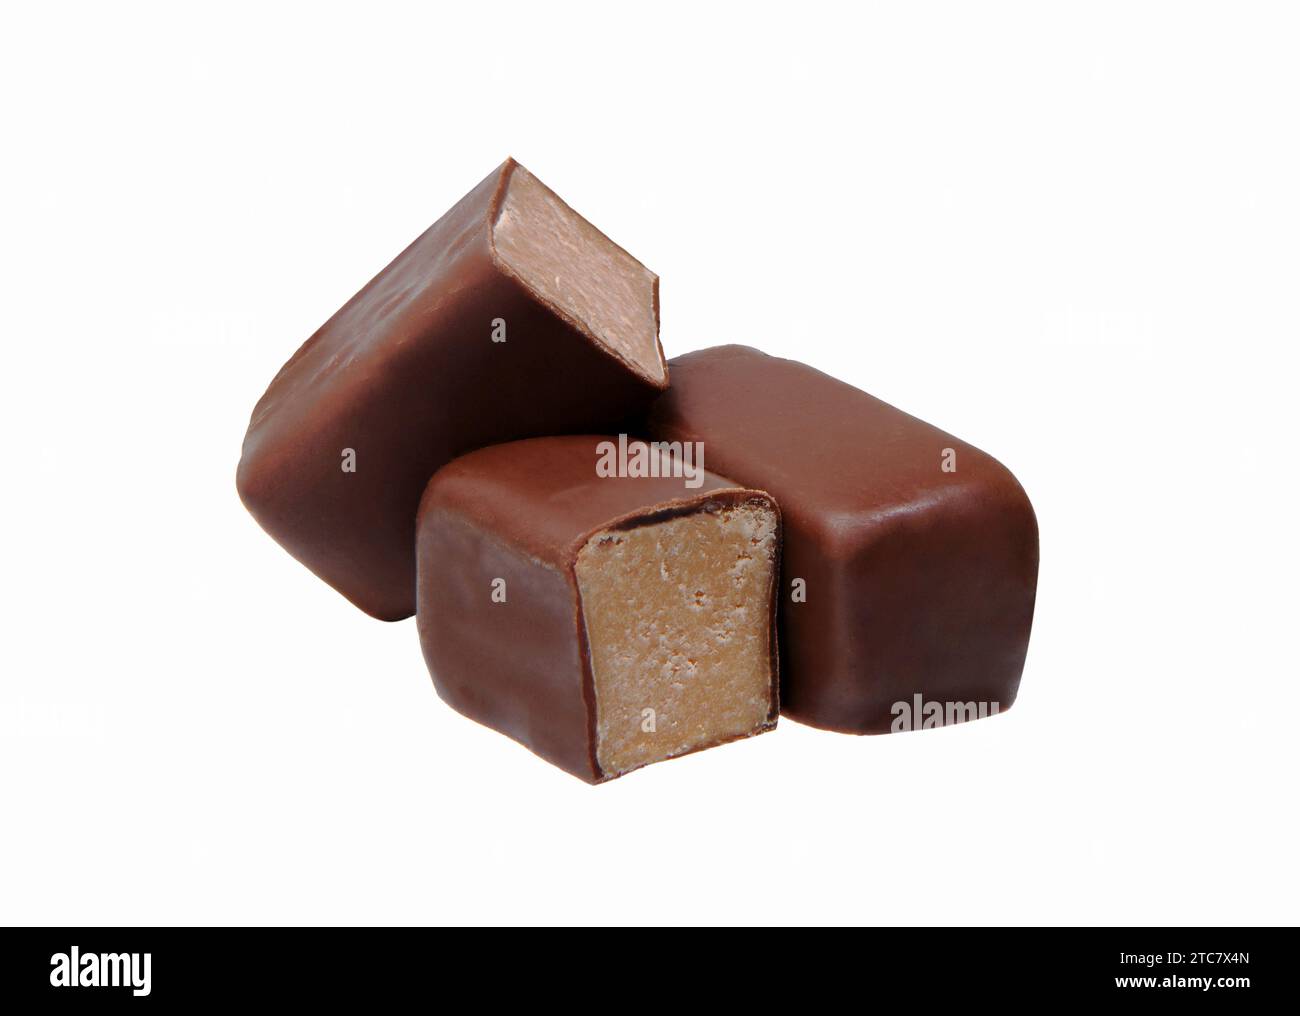 Schokoladenbonbons mit Füllung isoliert auf weißem Hintergrund. Schokoladenbonbons liegen übereinander. Stockfoto